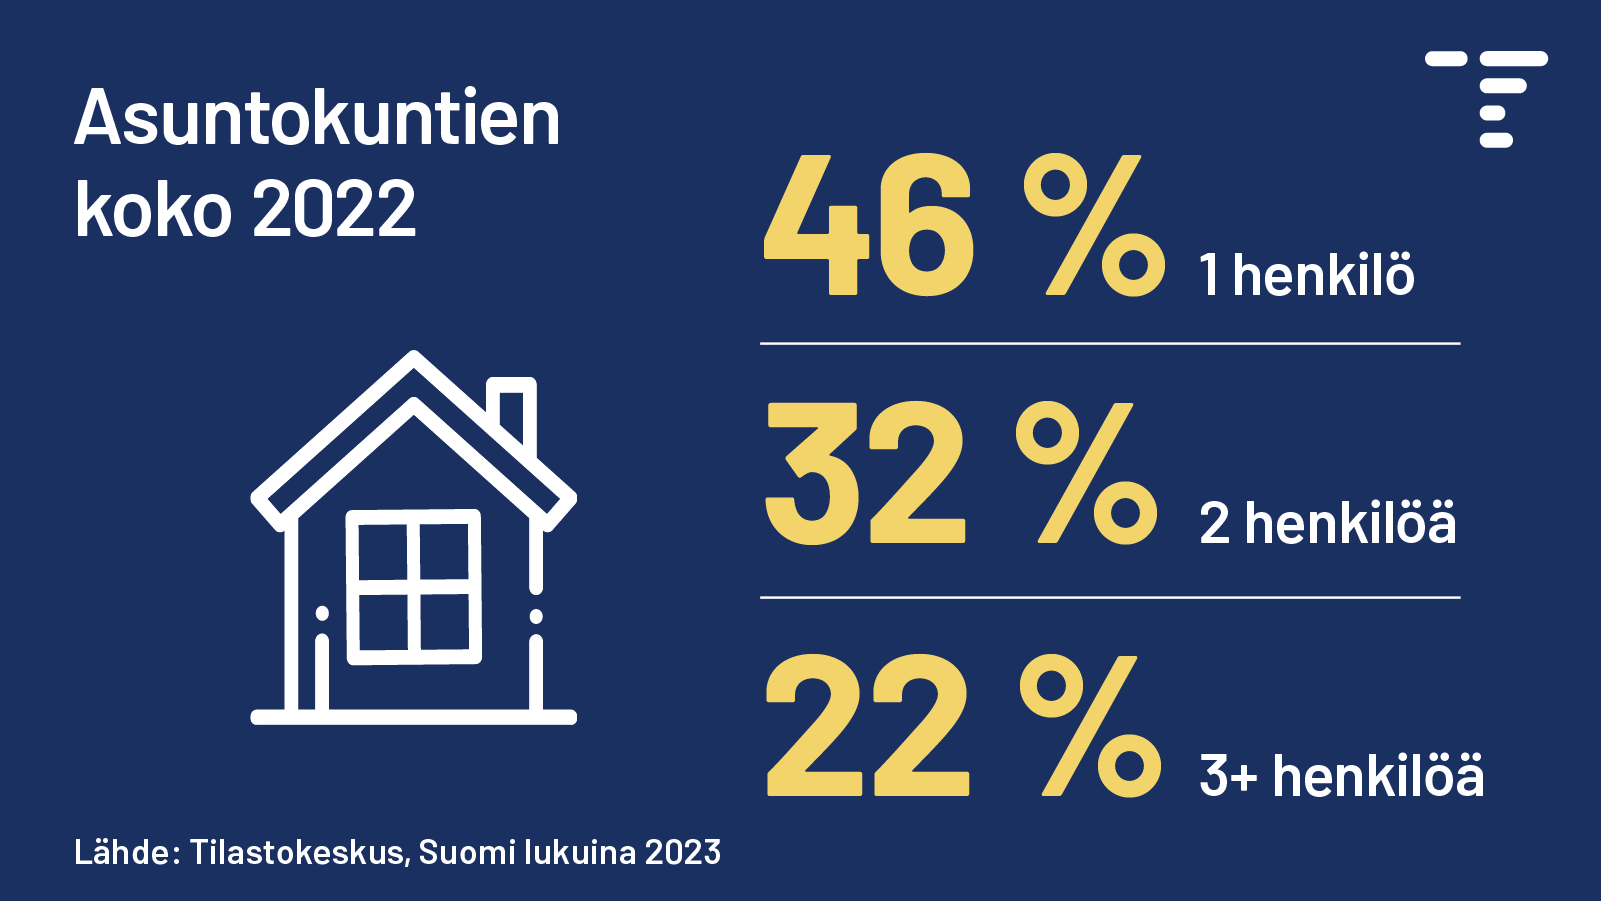 Otsikko: Asuntokuntien koko 2022. Kuviosta selviää, että 46 % asuntokunnista oli vuonna 2022 yhden hengen talouksia, 32 % kahden hengen ja 22 % kolmen hengen tai tätä suurempia. Lähde: Tilastokeskus, Suomi lukuina 2023.